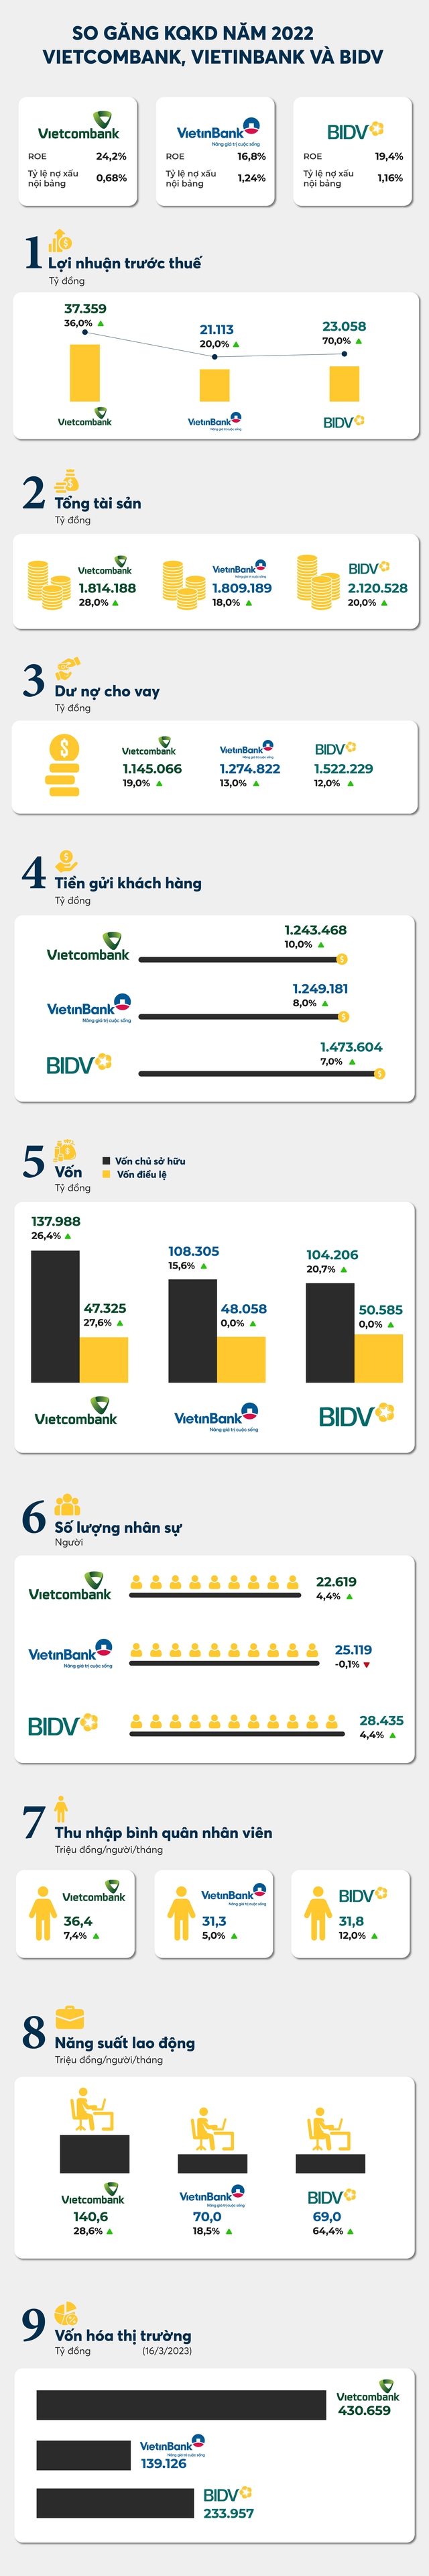 So găng Big3 ngân hàng: Vietcombank vượt trội về lợi nhuận, BIDV dẫn đầu quy mô, VietinBank là ông vua về nhì - Ảnh 1.